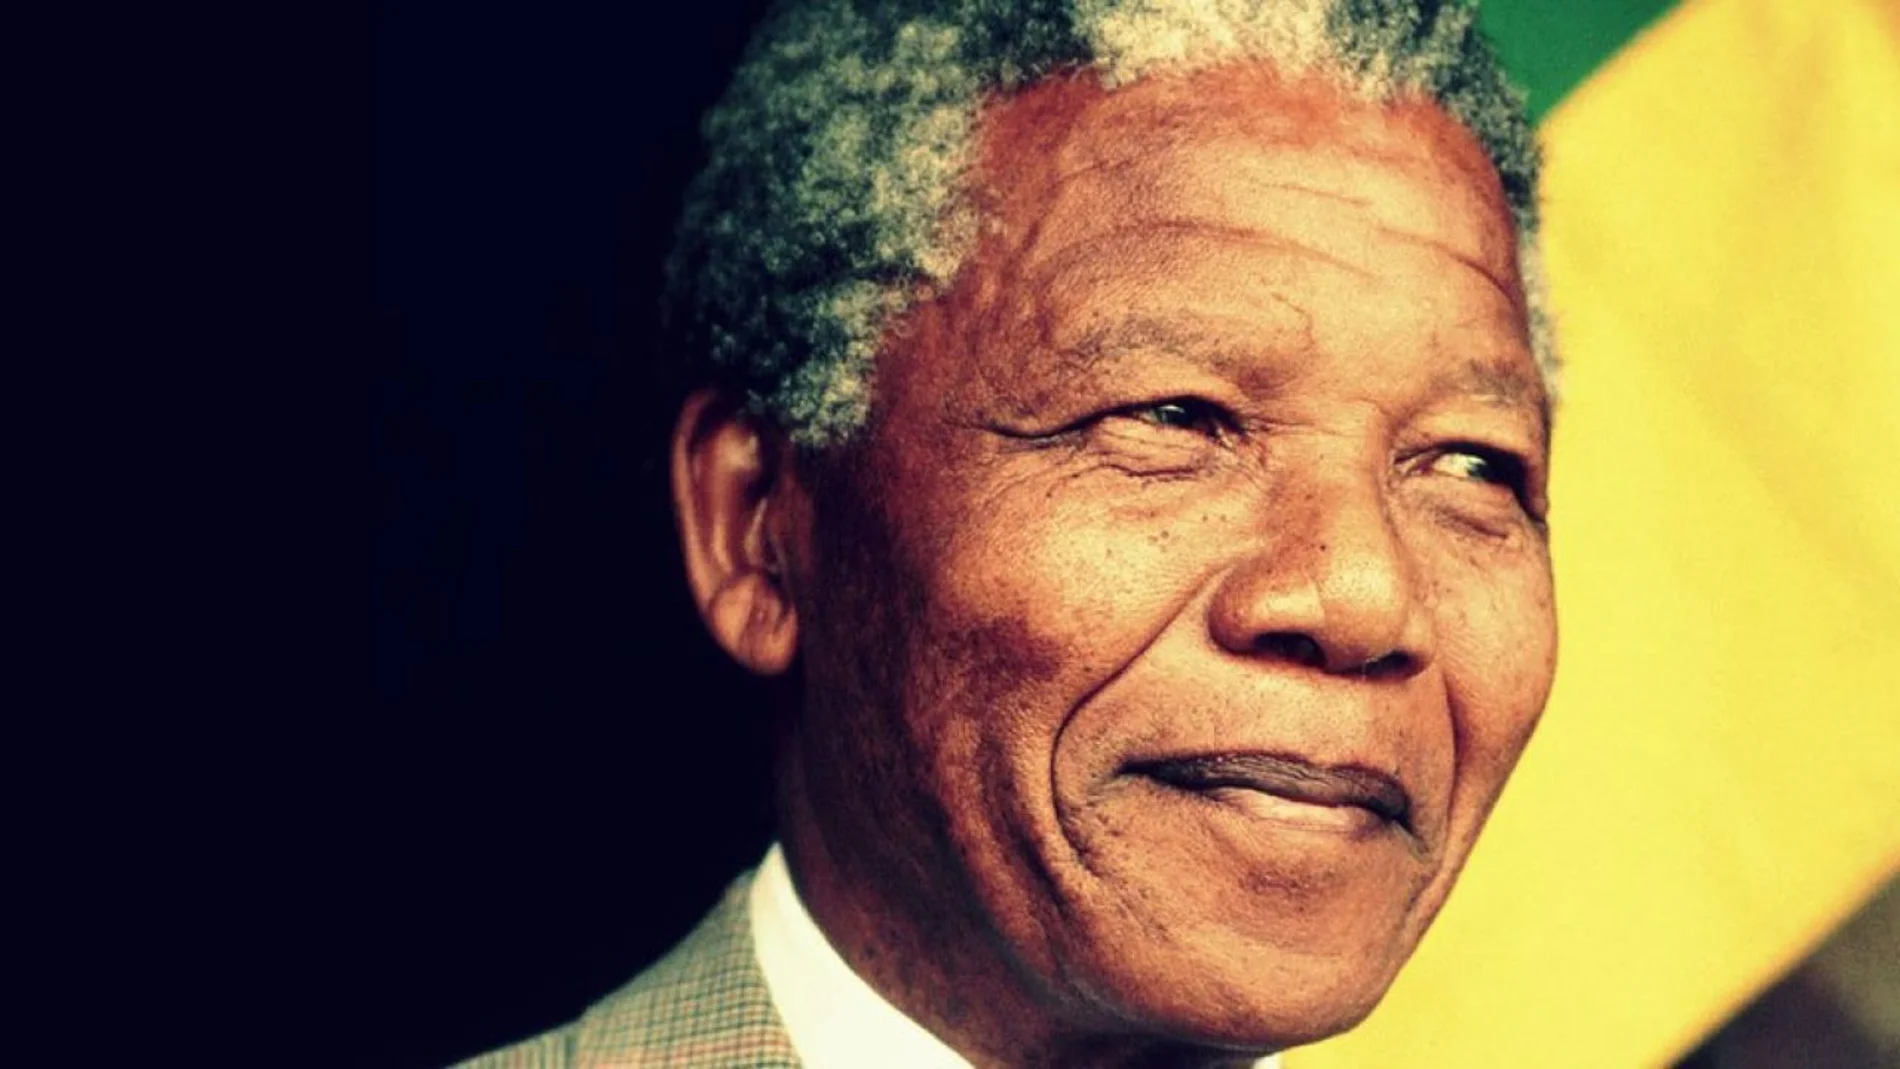 Efemérides de hoy 9 de mayo de 2022: Nelson Mandela es proclamado e investido como el primer presidente negro de Sudáfrica